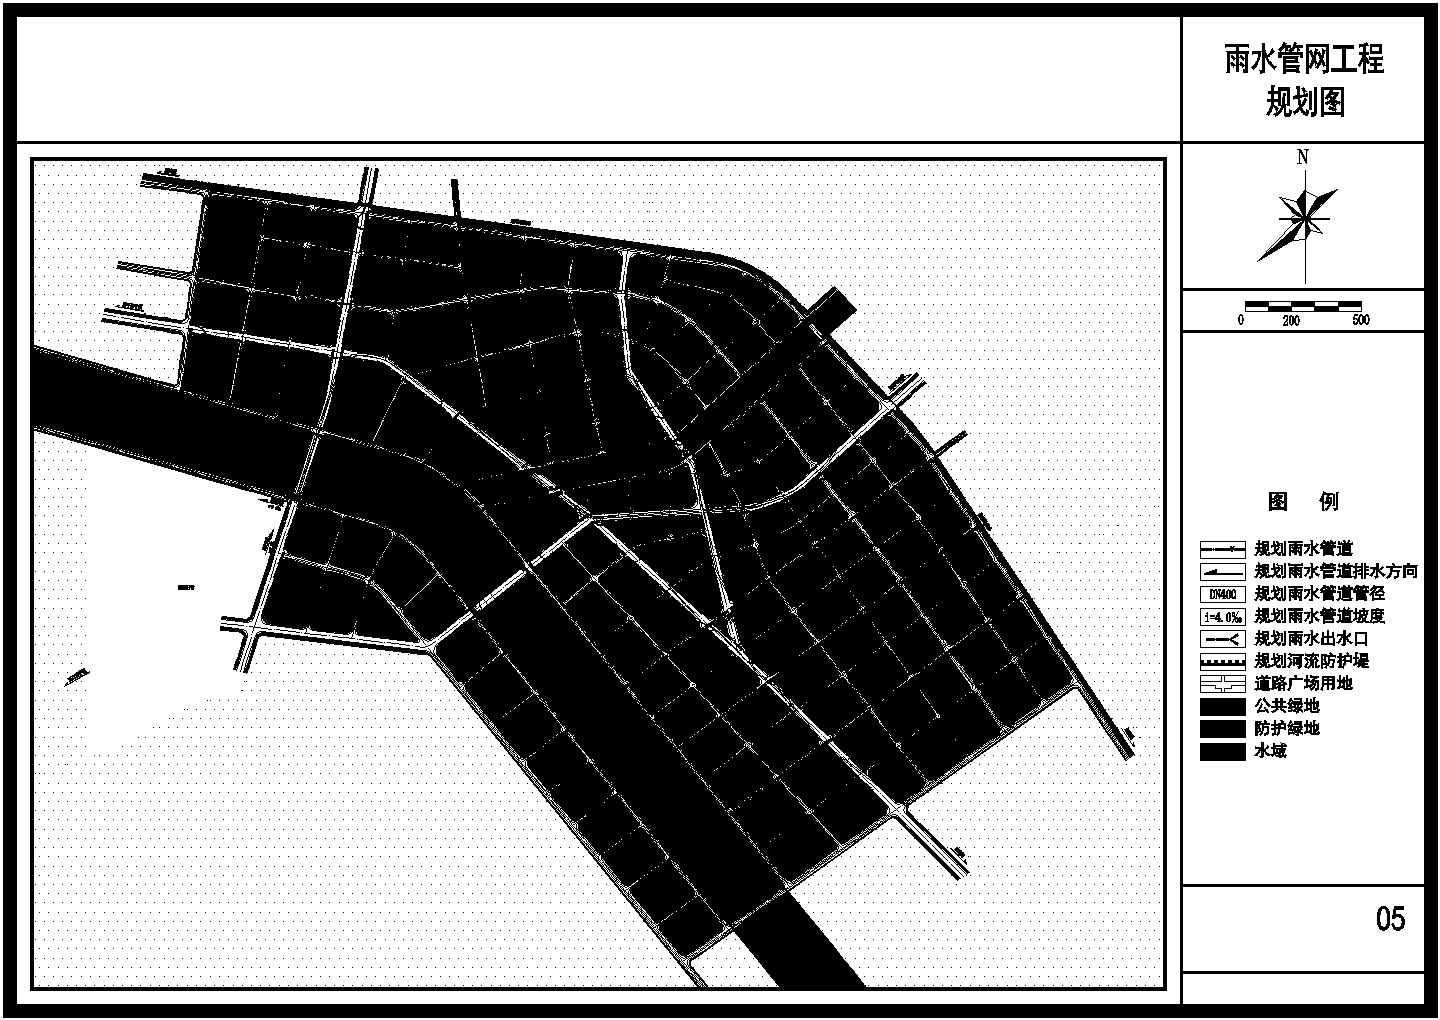 某城镇雨水管网工程规划平面布置图